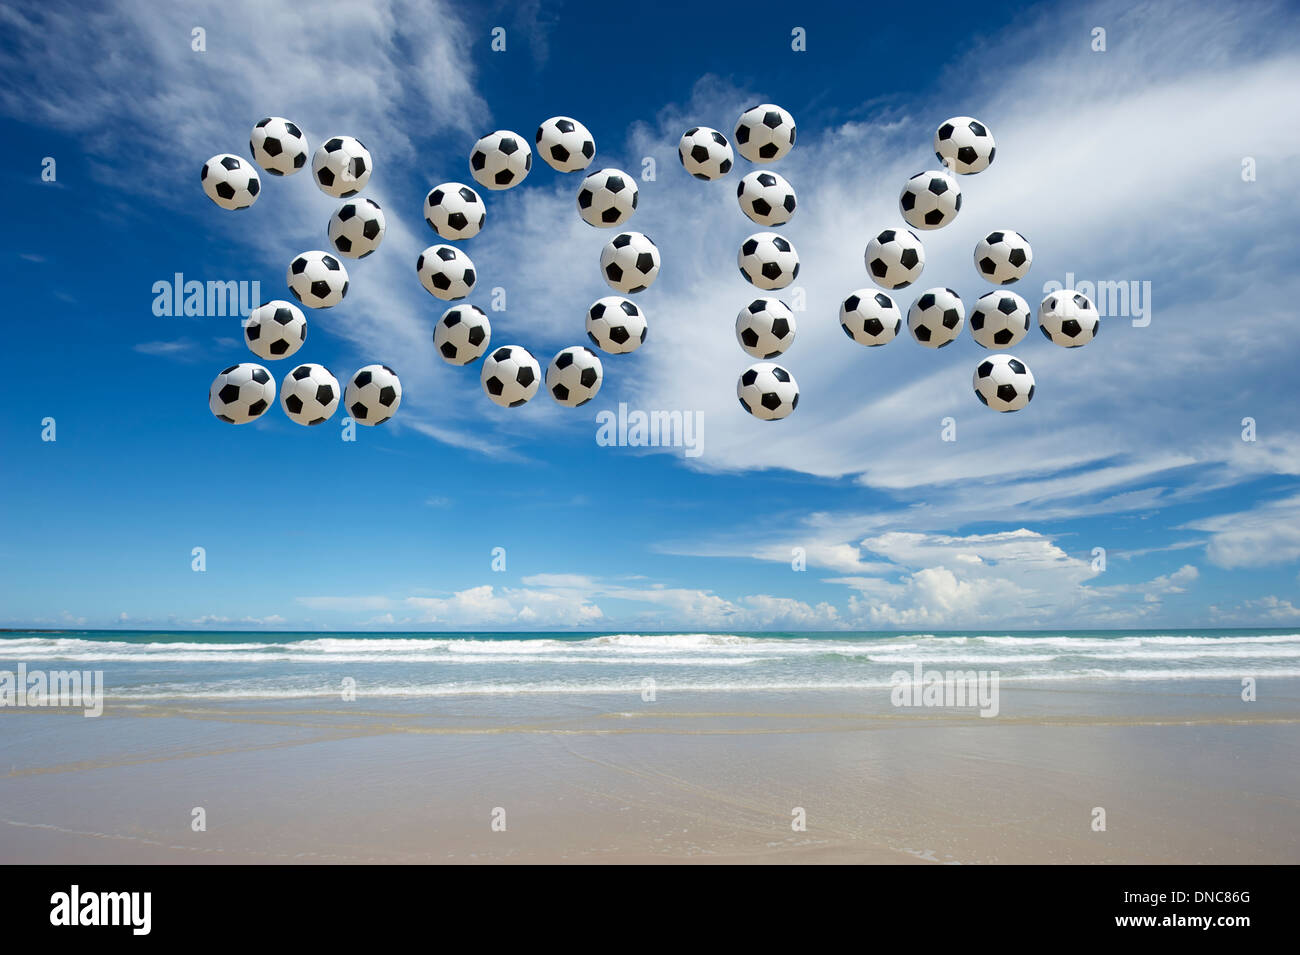 Nouvelle Année 2014 message faites avec des ballons de football dans le ciel sur une plage vide Banque D'Images